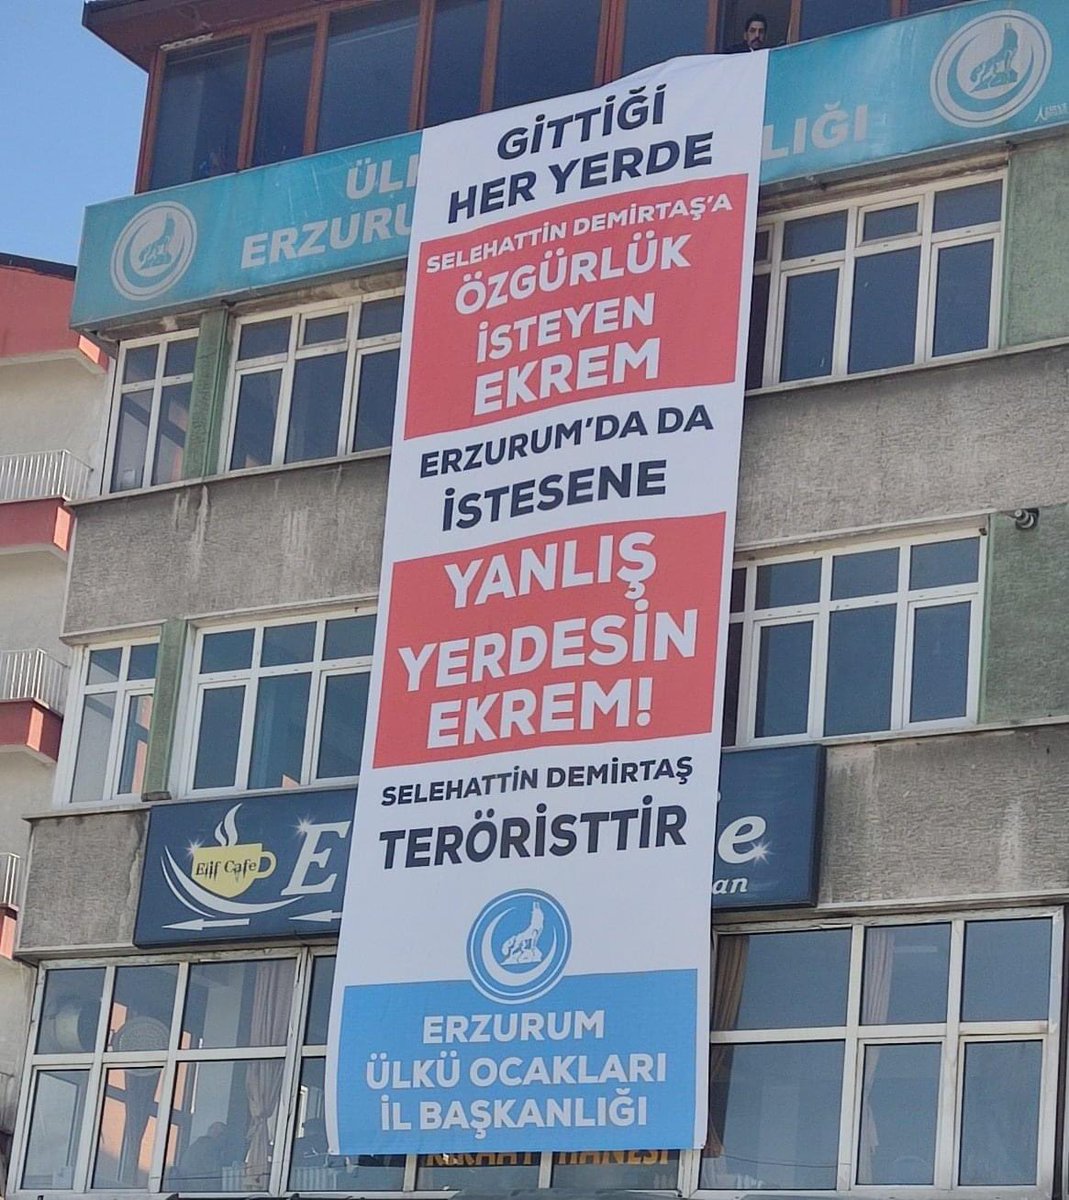 Y*vş*k Erzurum'da da terörist Demirtaş'a özgürlük istesene...
Helal Olsun Erzurum Ülkü Ocakları 🇹🇷👏